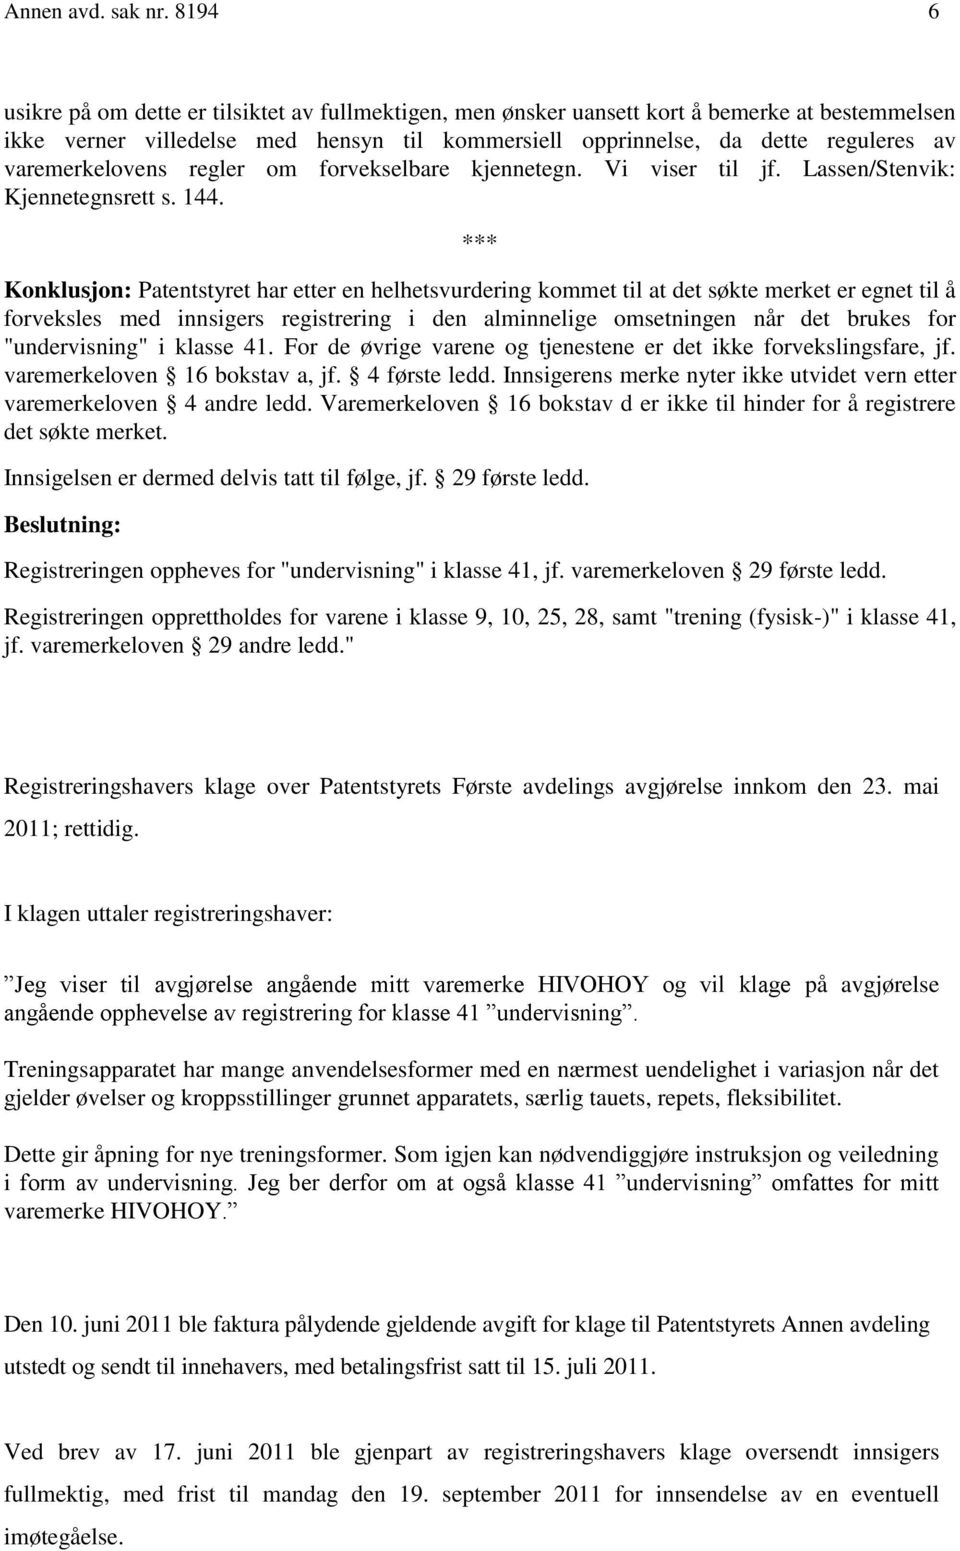 varemerkelovens regler om forvekselbare kjennetegn. Vi viser til jf. Lassen/Stenvik: Kjennetegnsrett s. 144.